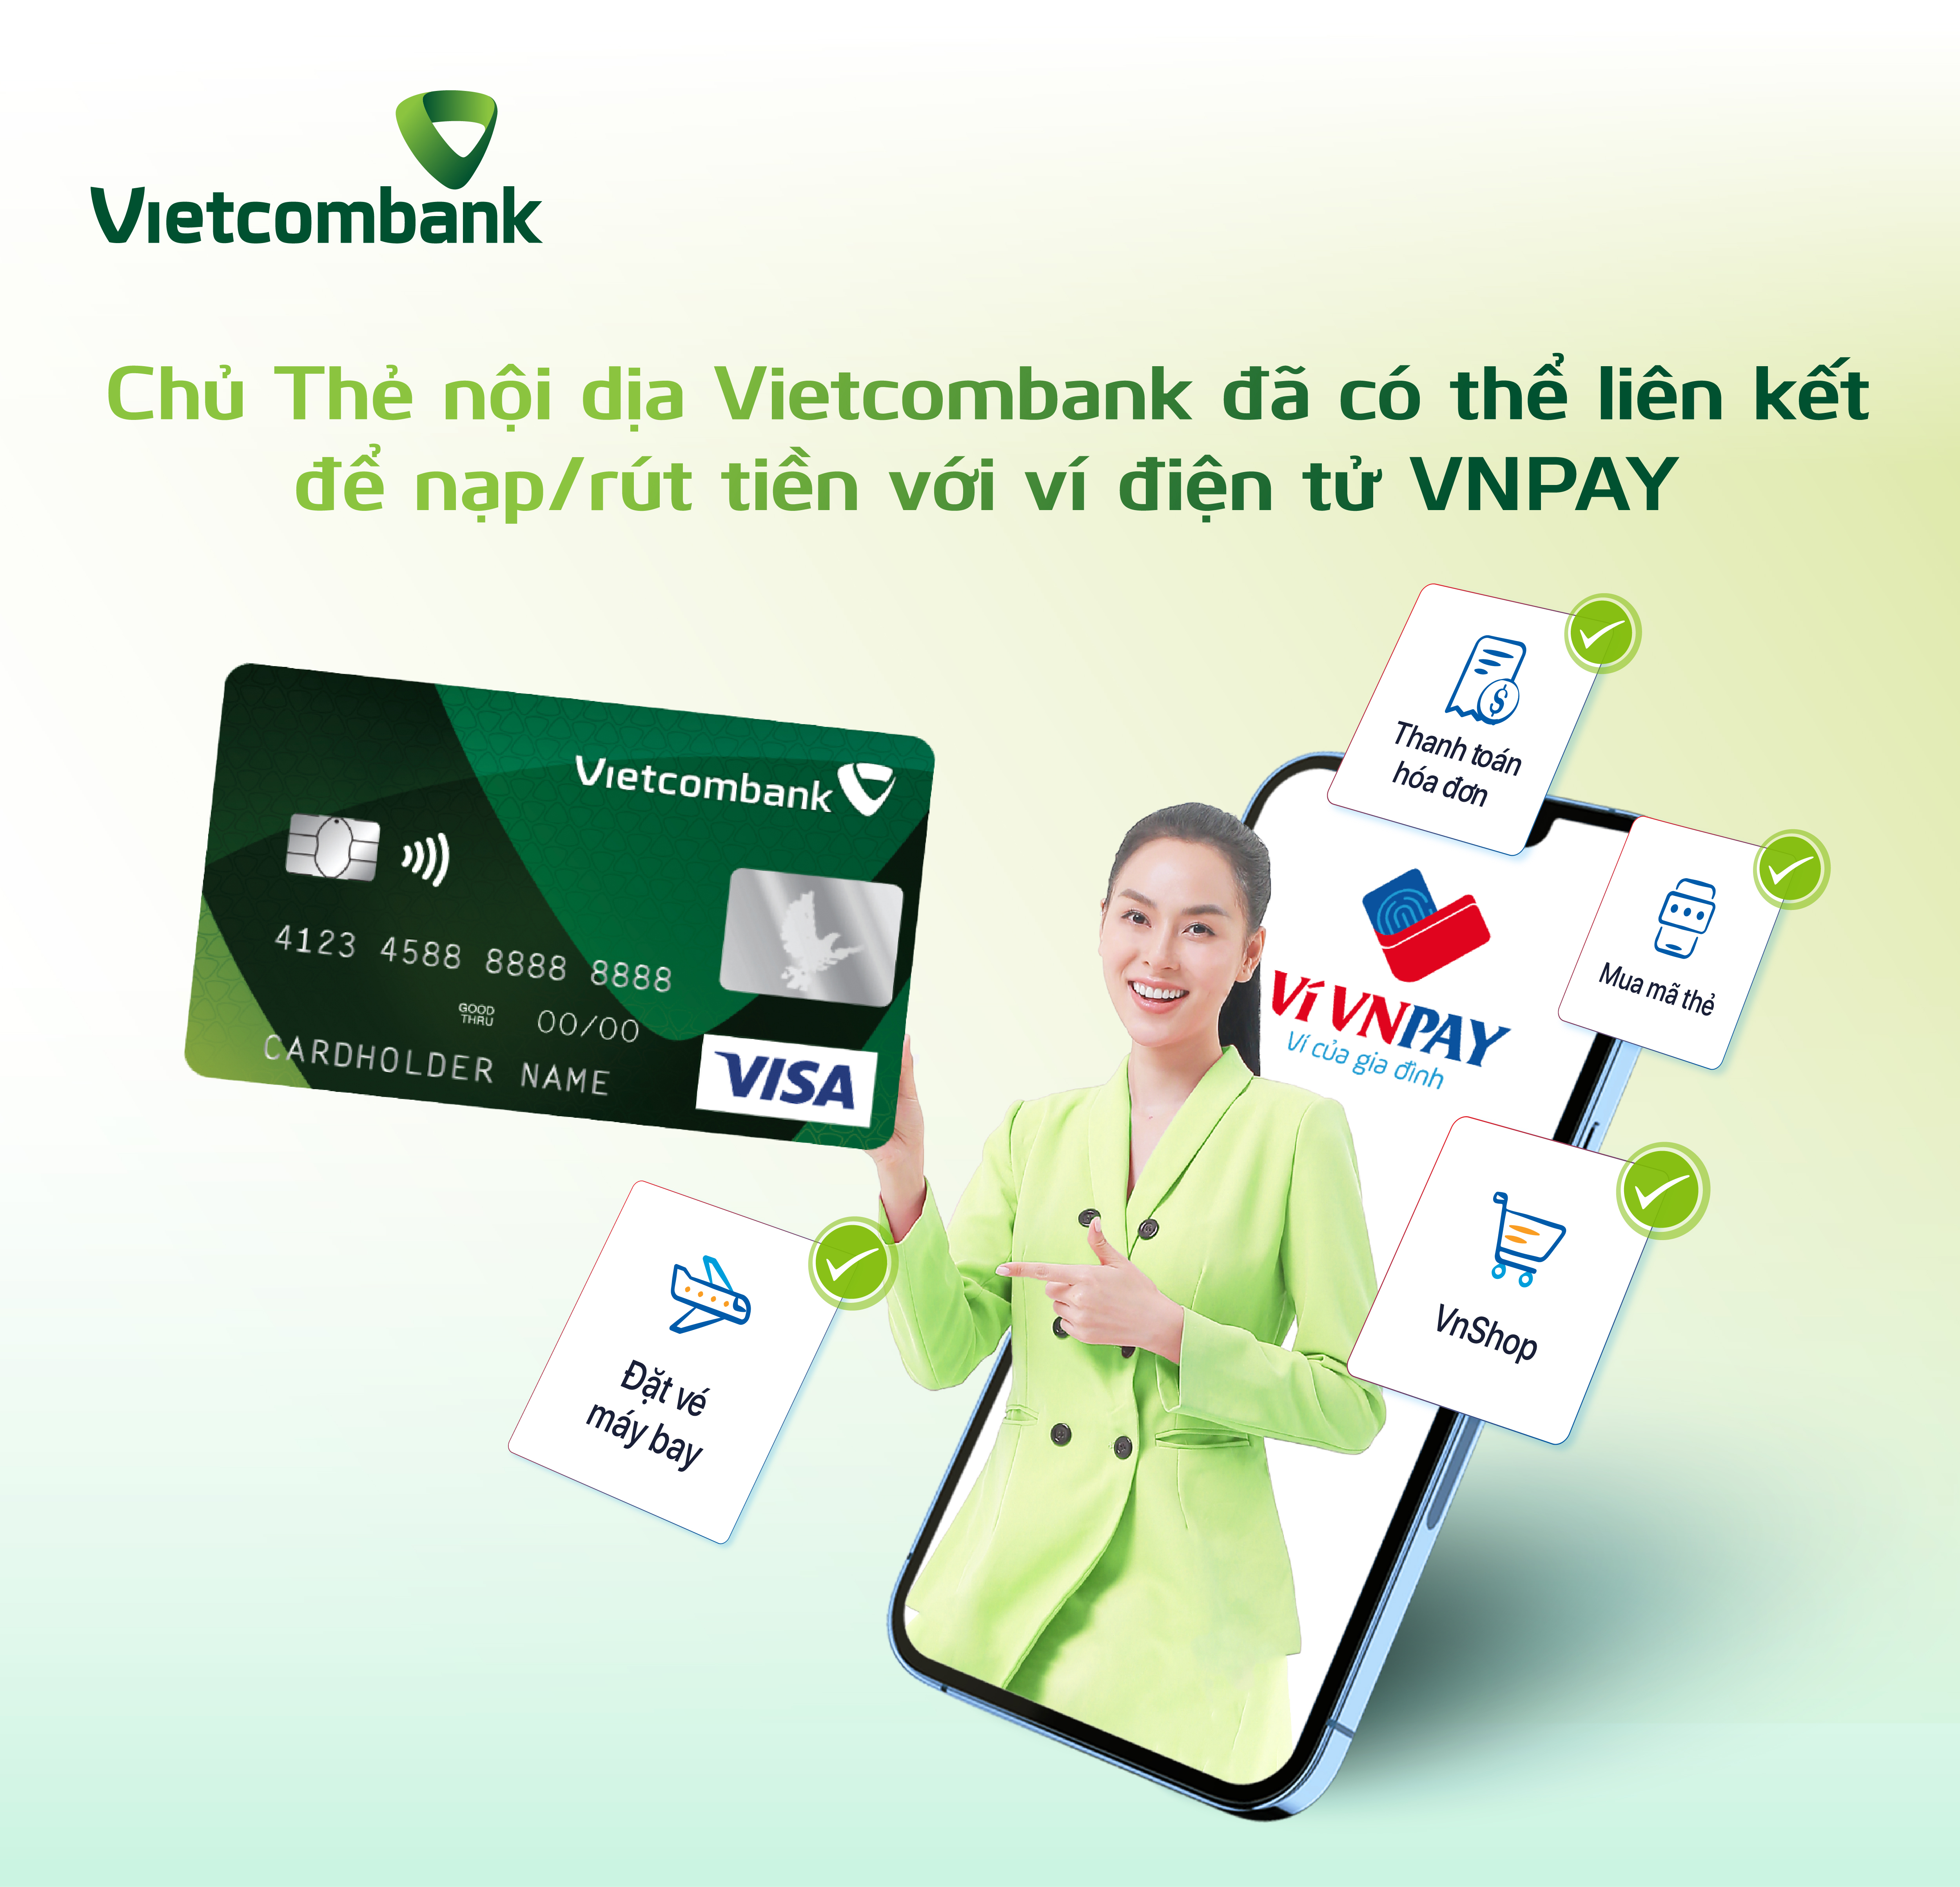 Chủ thẻ nội địa Vietcombank đã có thể liên kết để nạp/rút tiền với ví điện tử VNPAY